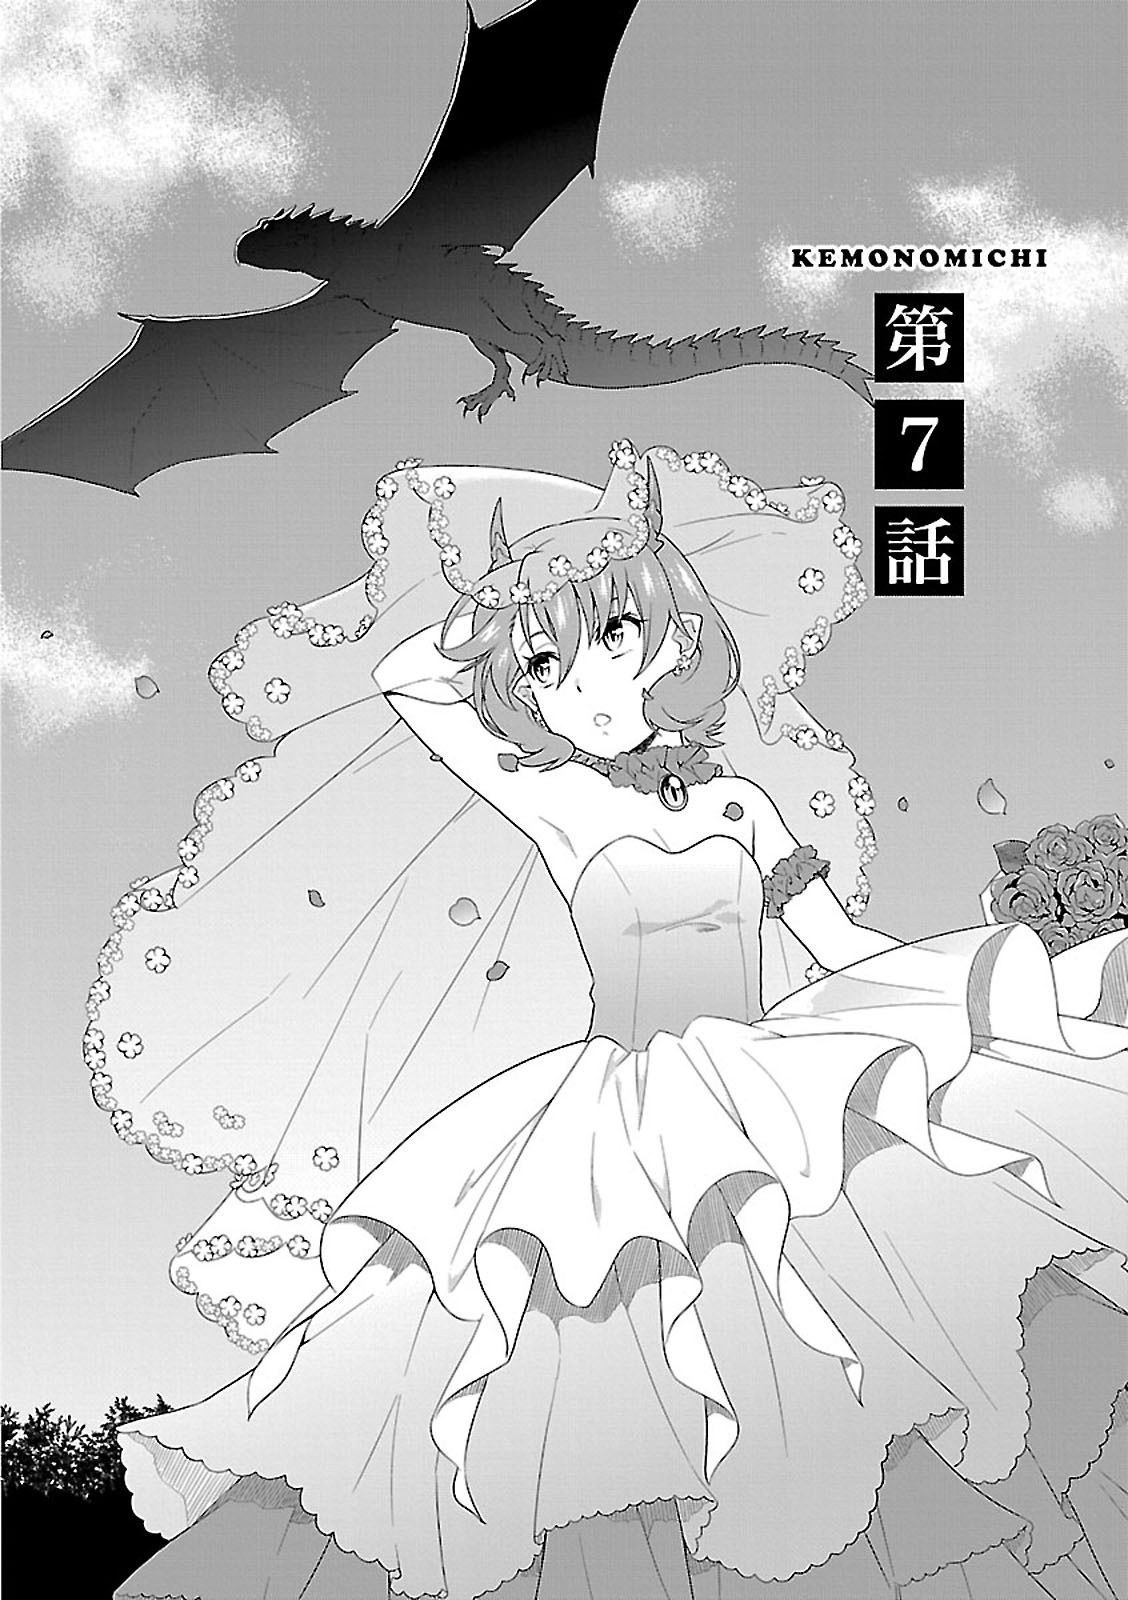 Read Kemono Michi Chapter 7 - MangaFreak